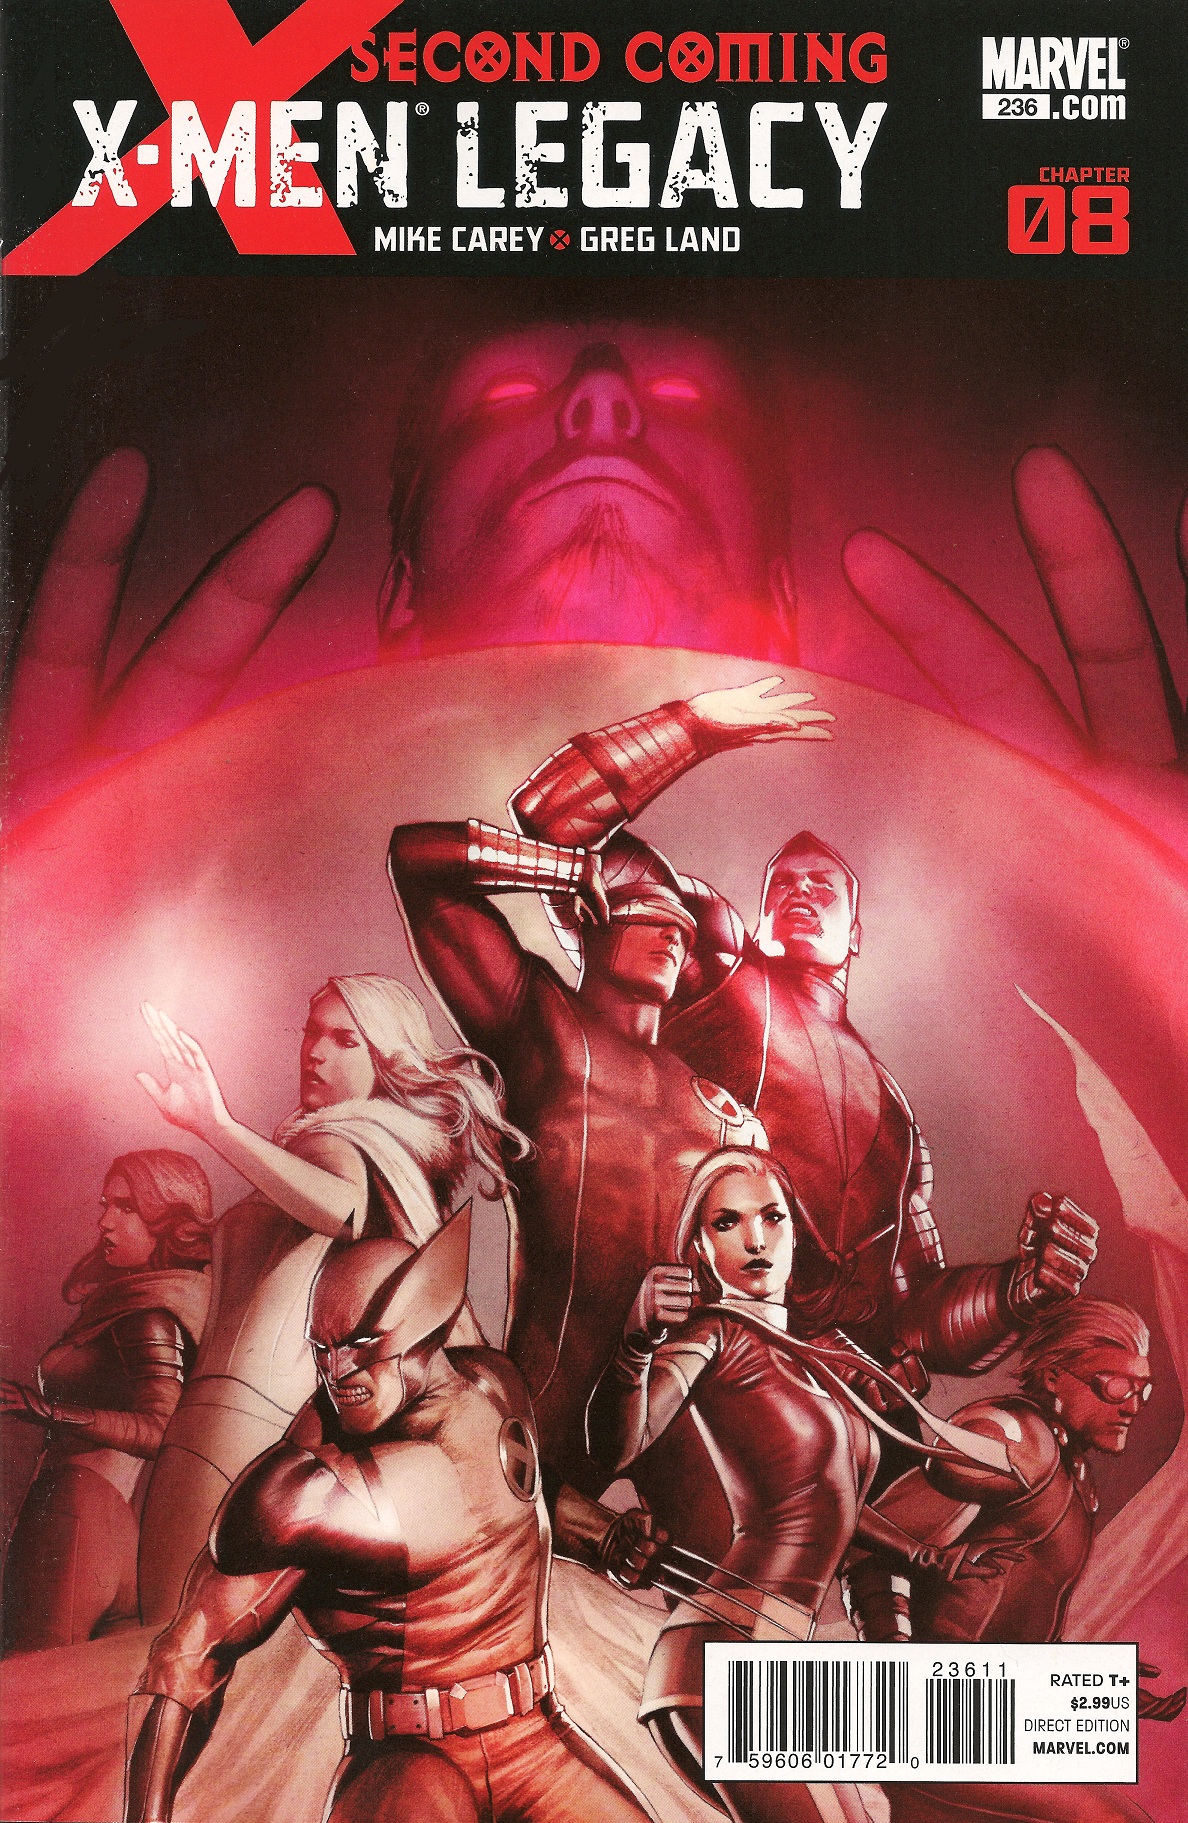 X-Men: Legacy Pics, Comics Collection